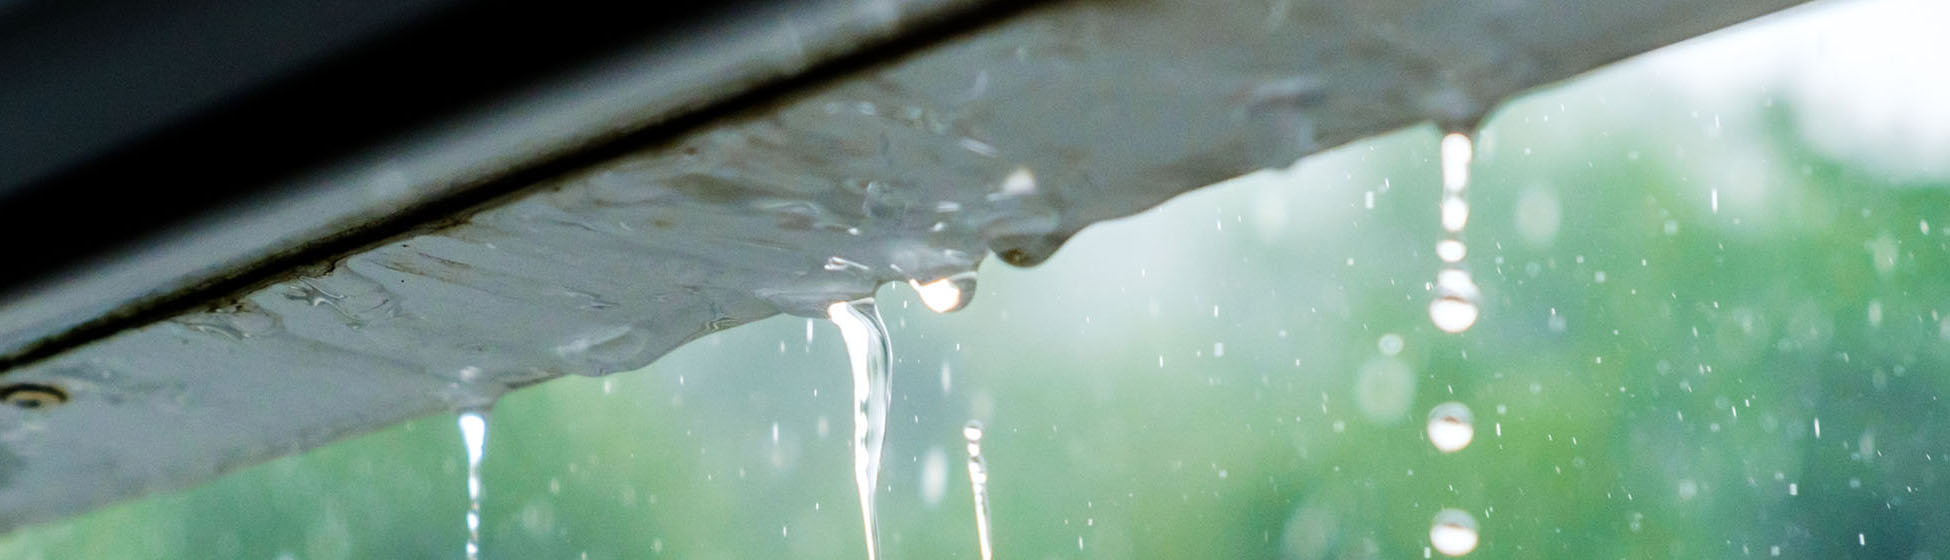 Installer une cuve de récupération d eau de pluie 1101010l